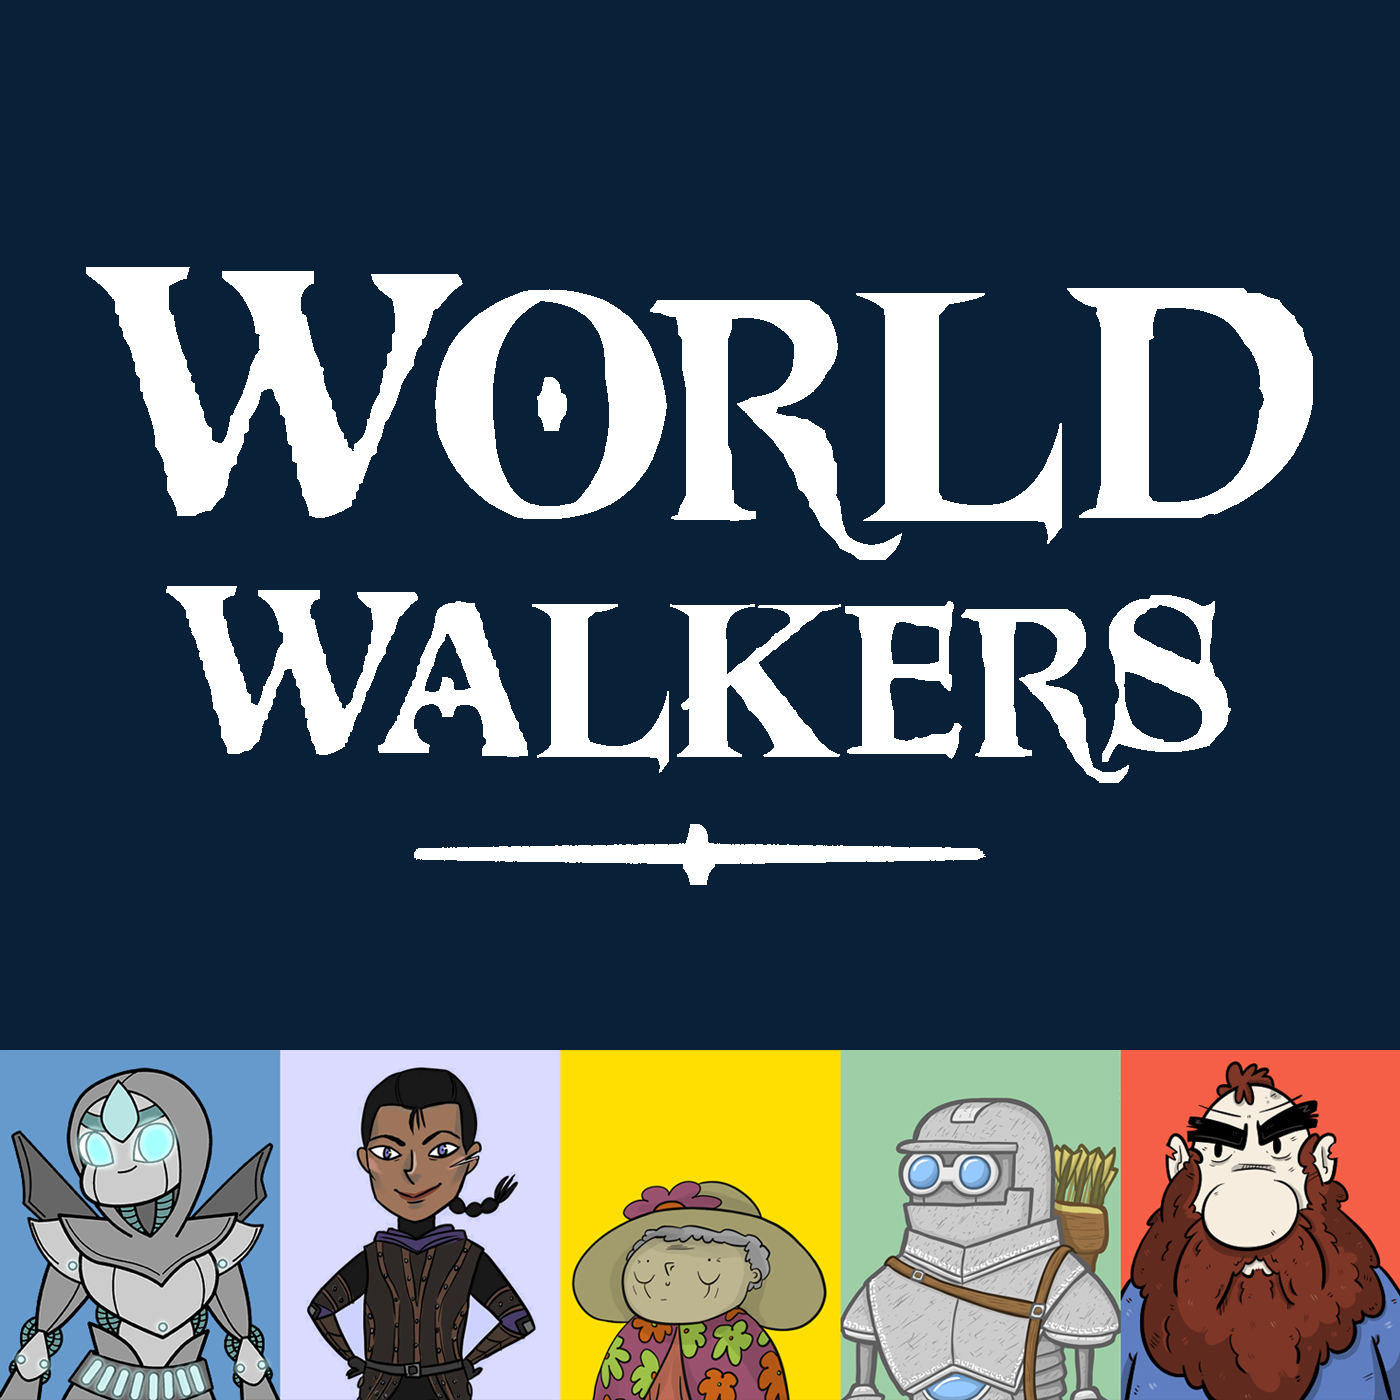 World Walkers